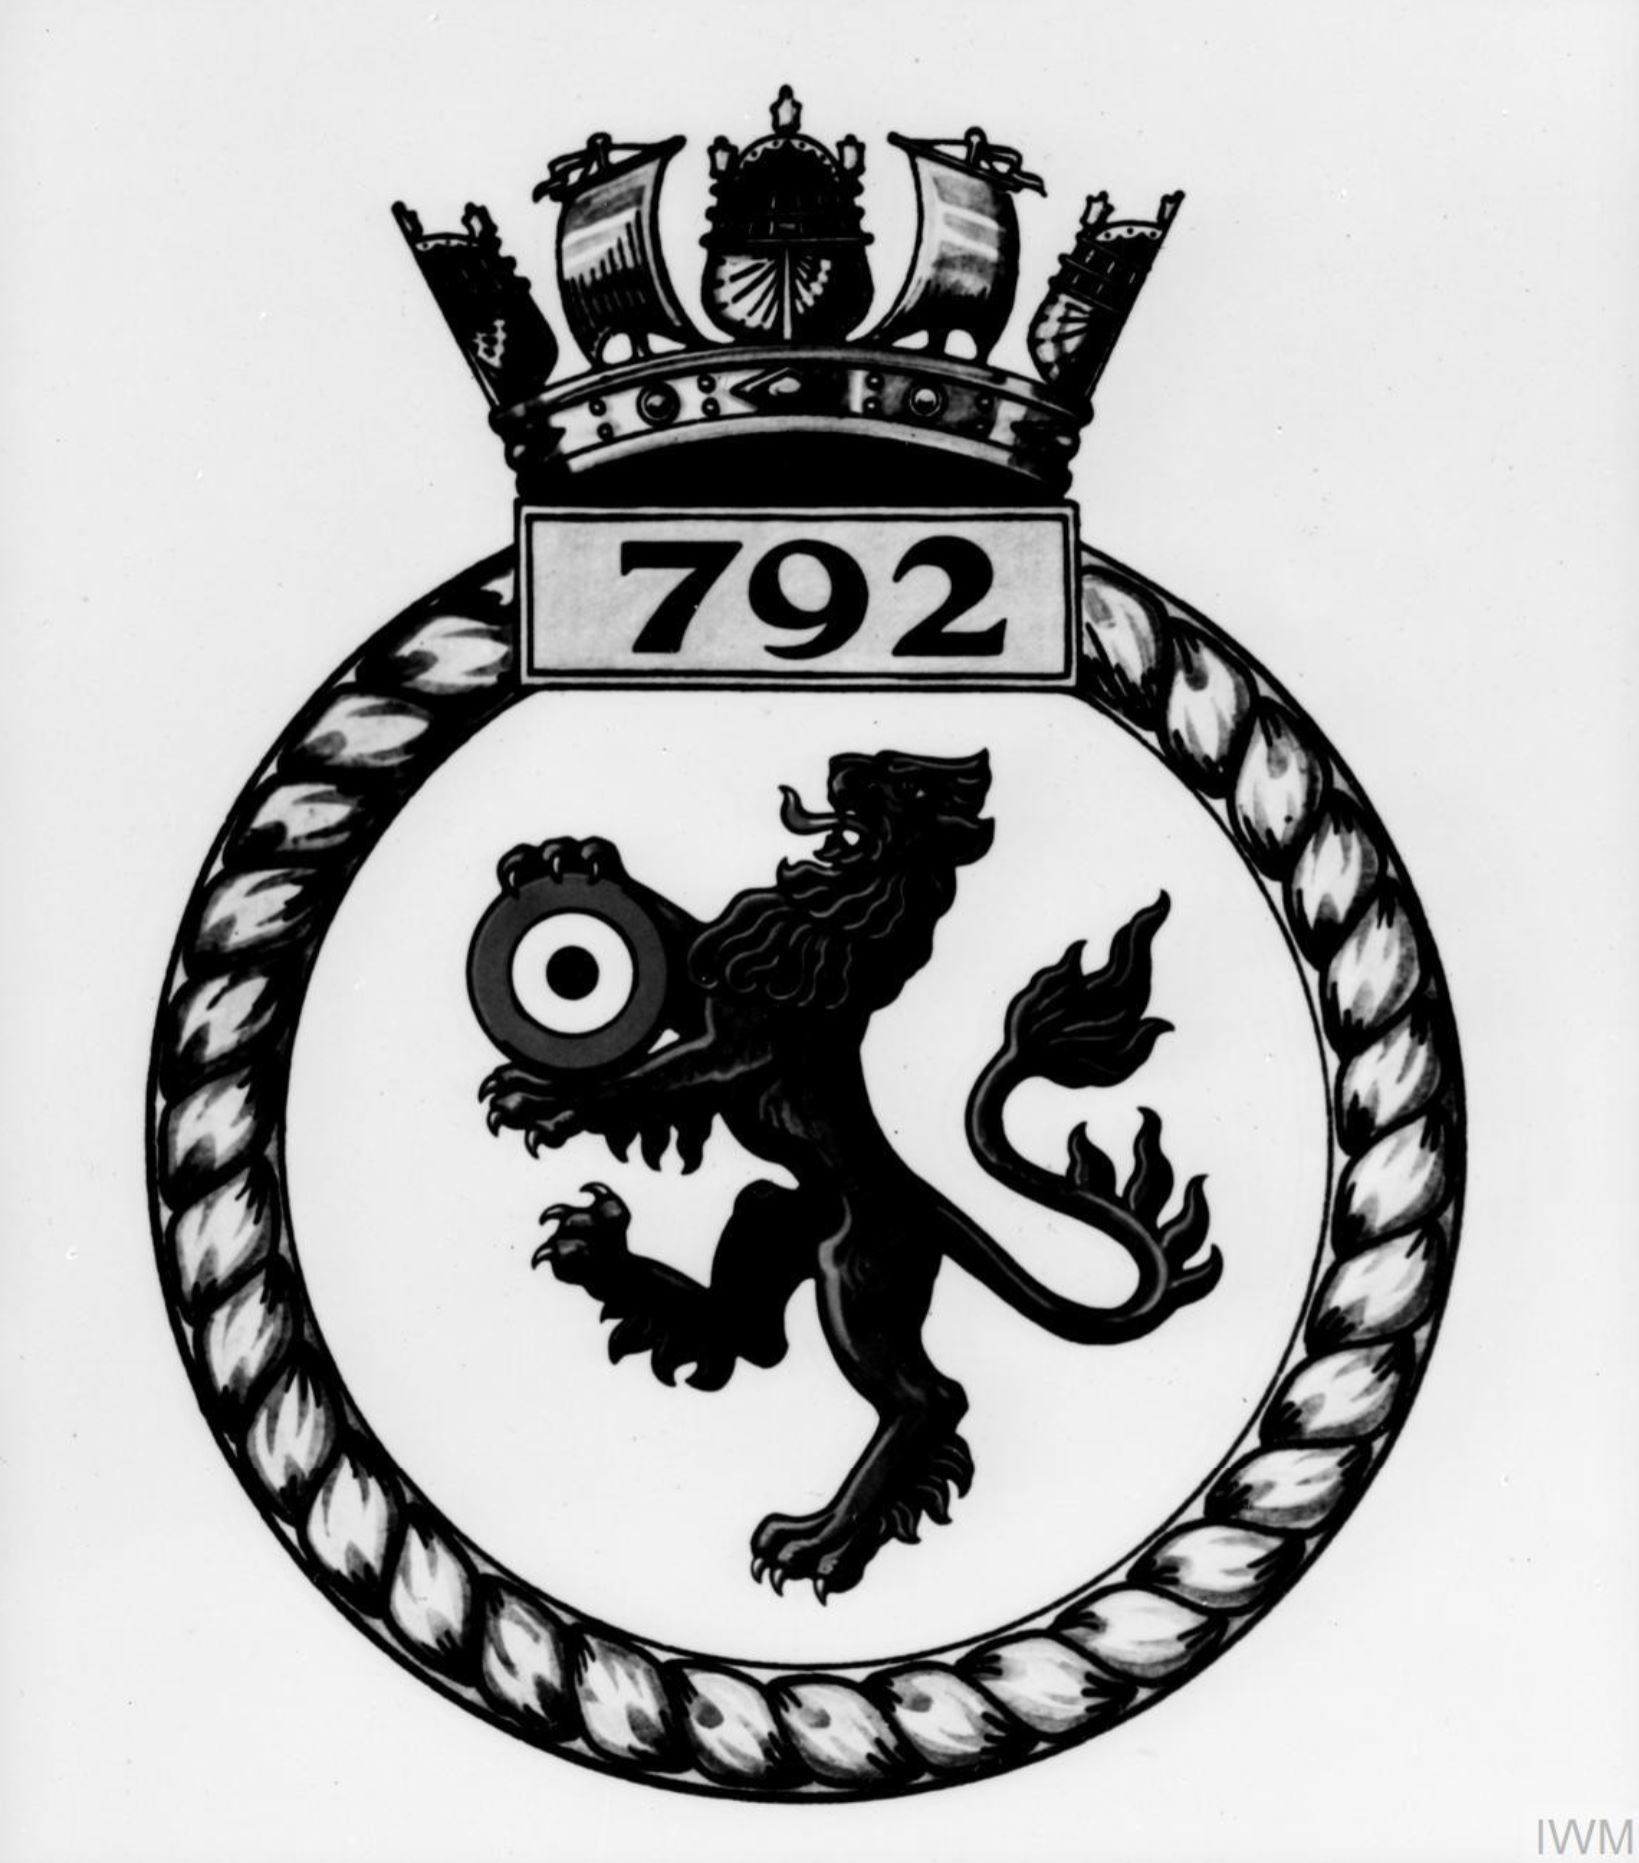 Fleet Air Arm crest of 792 Squadron IWM A28147